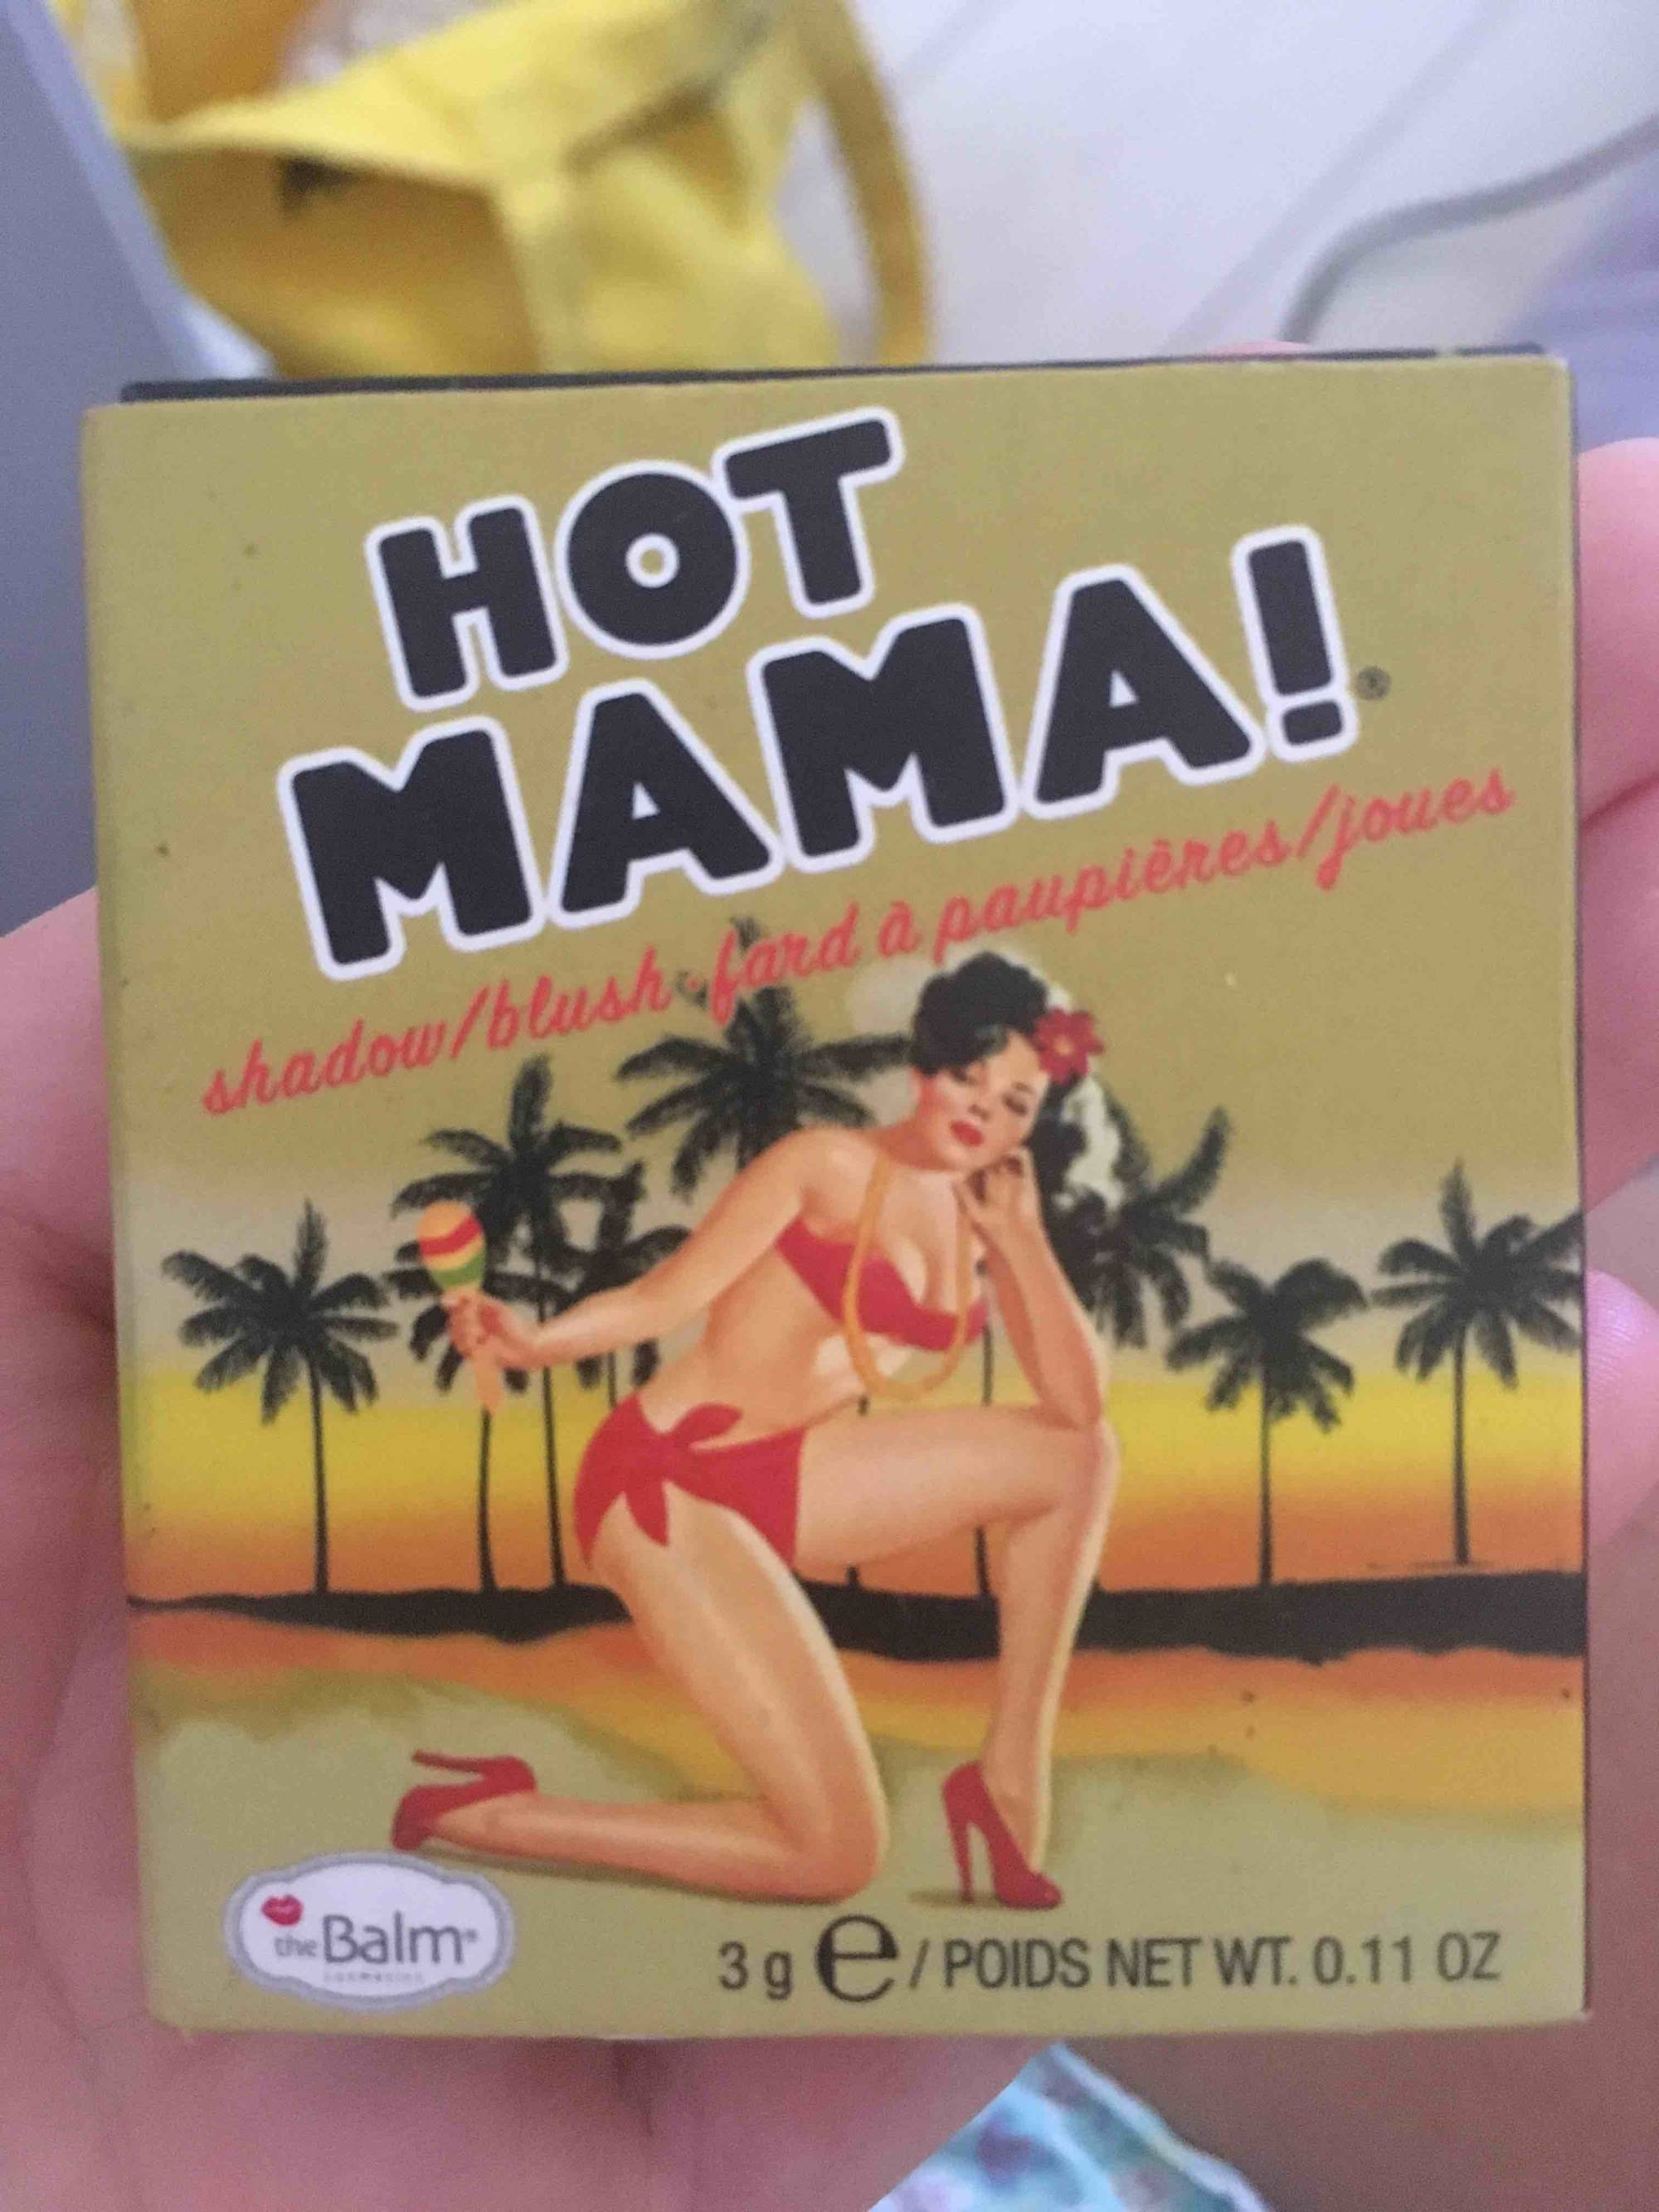 THE BALM - Hot mama - Fard à paupières/joues